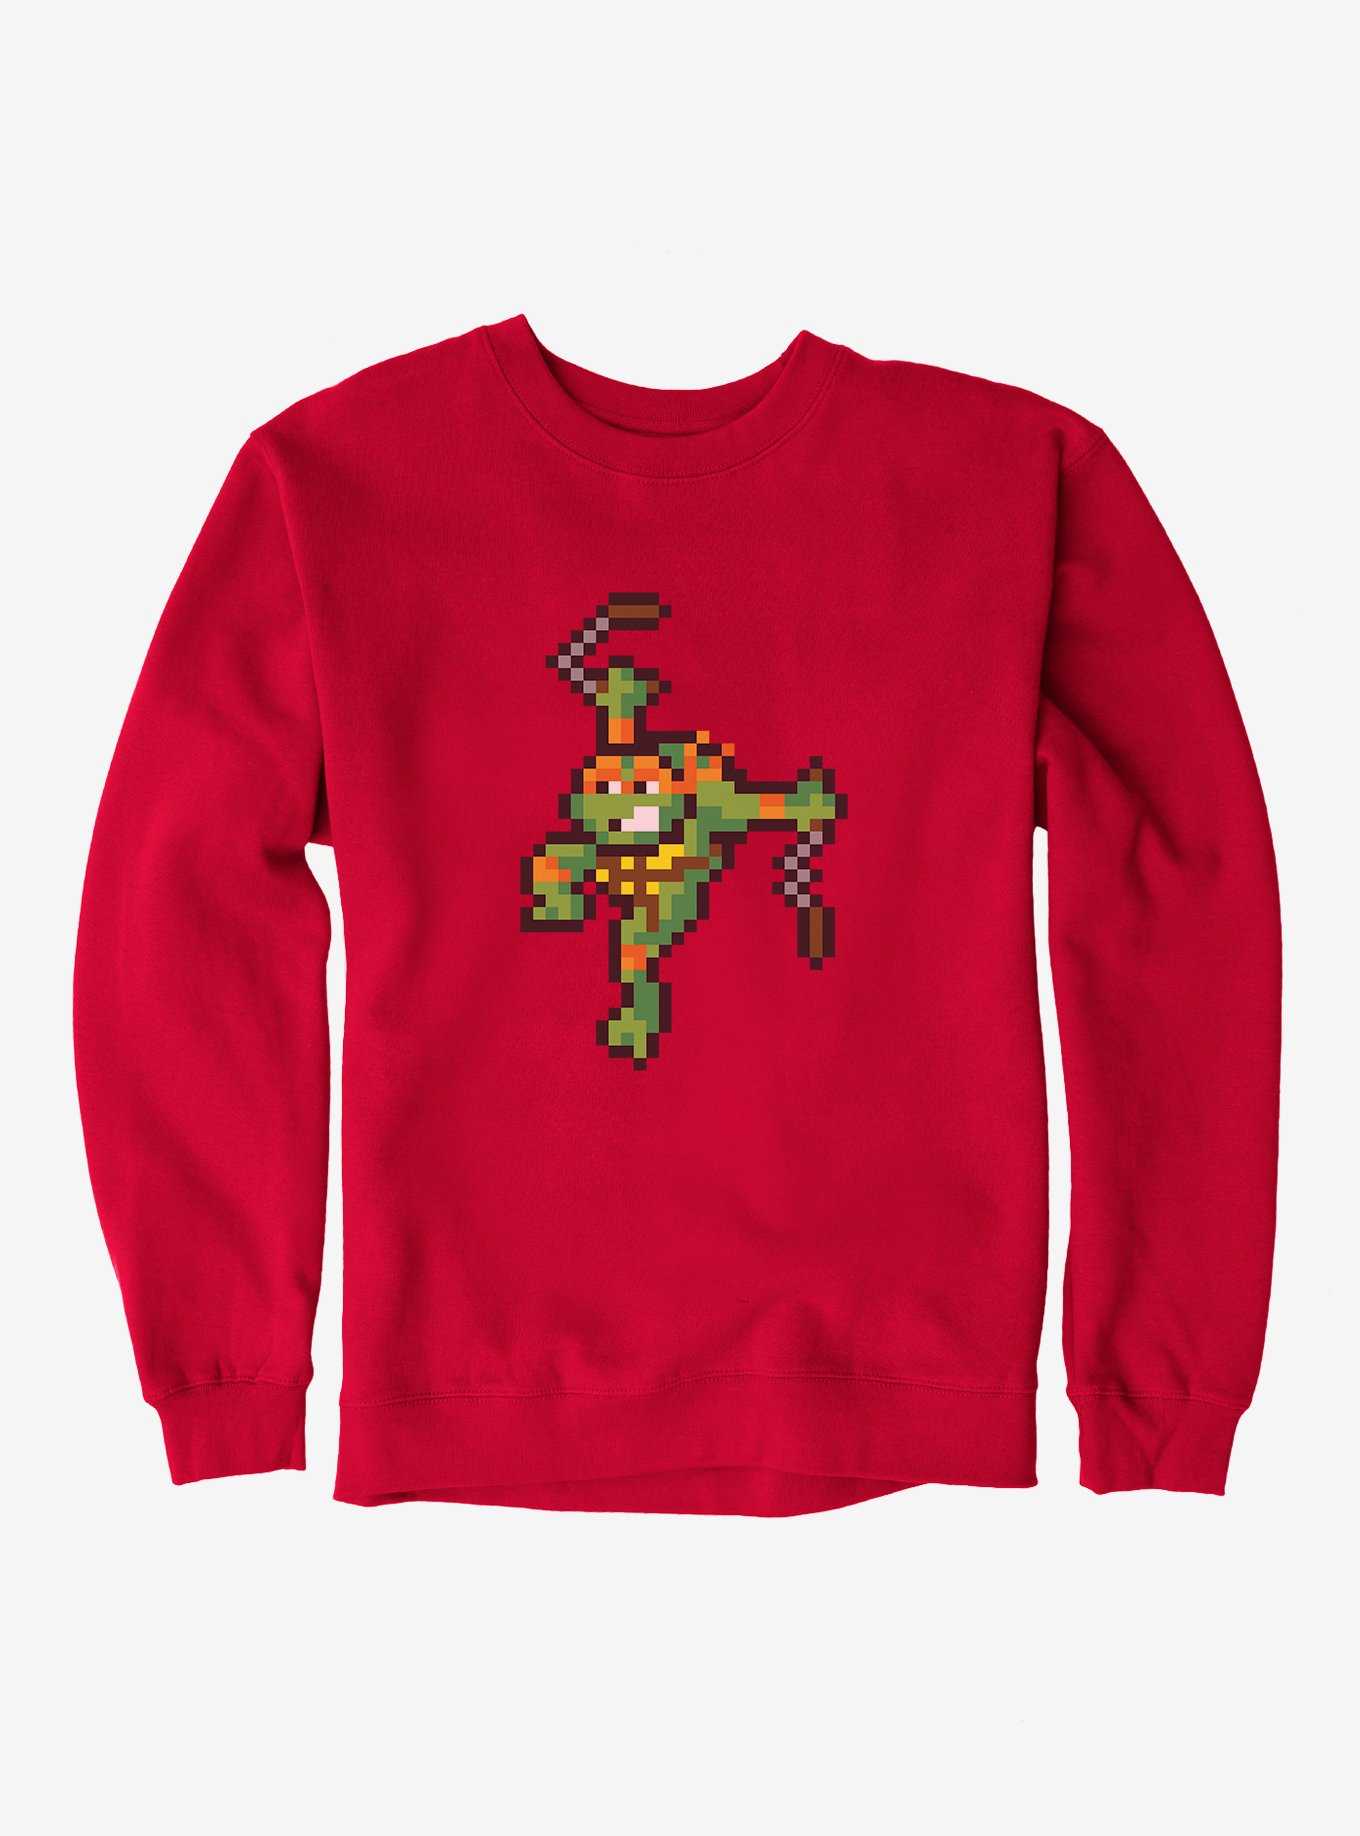 Teenage Mutant Ninja Turtles Digital Michelangelo Sweatshirt, , hi-res